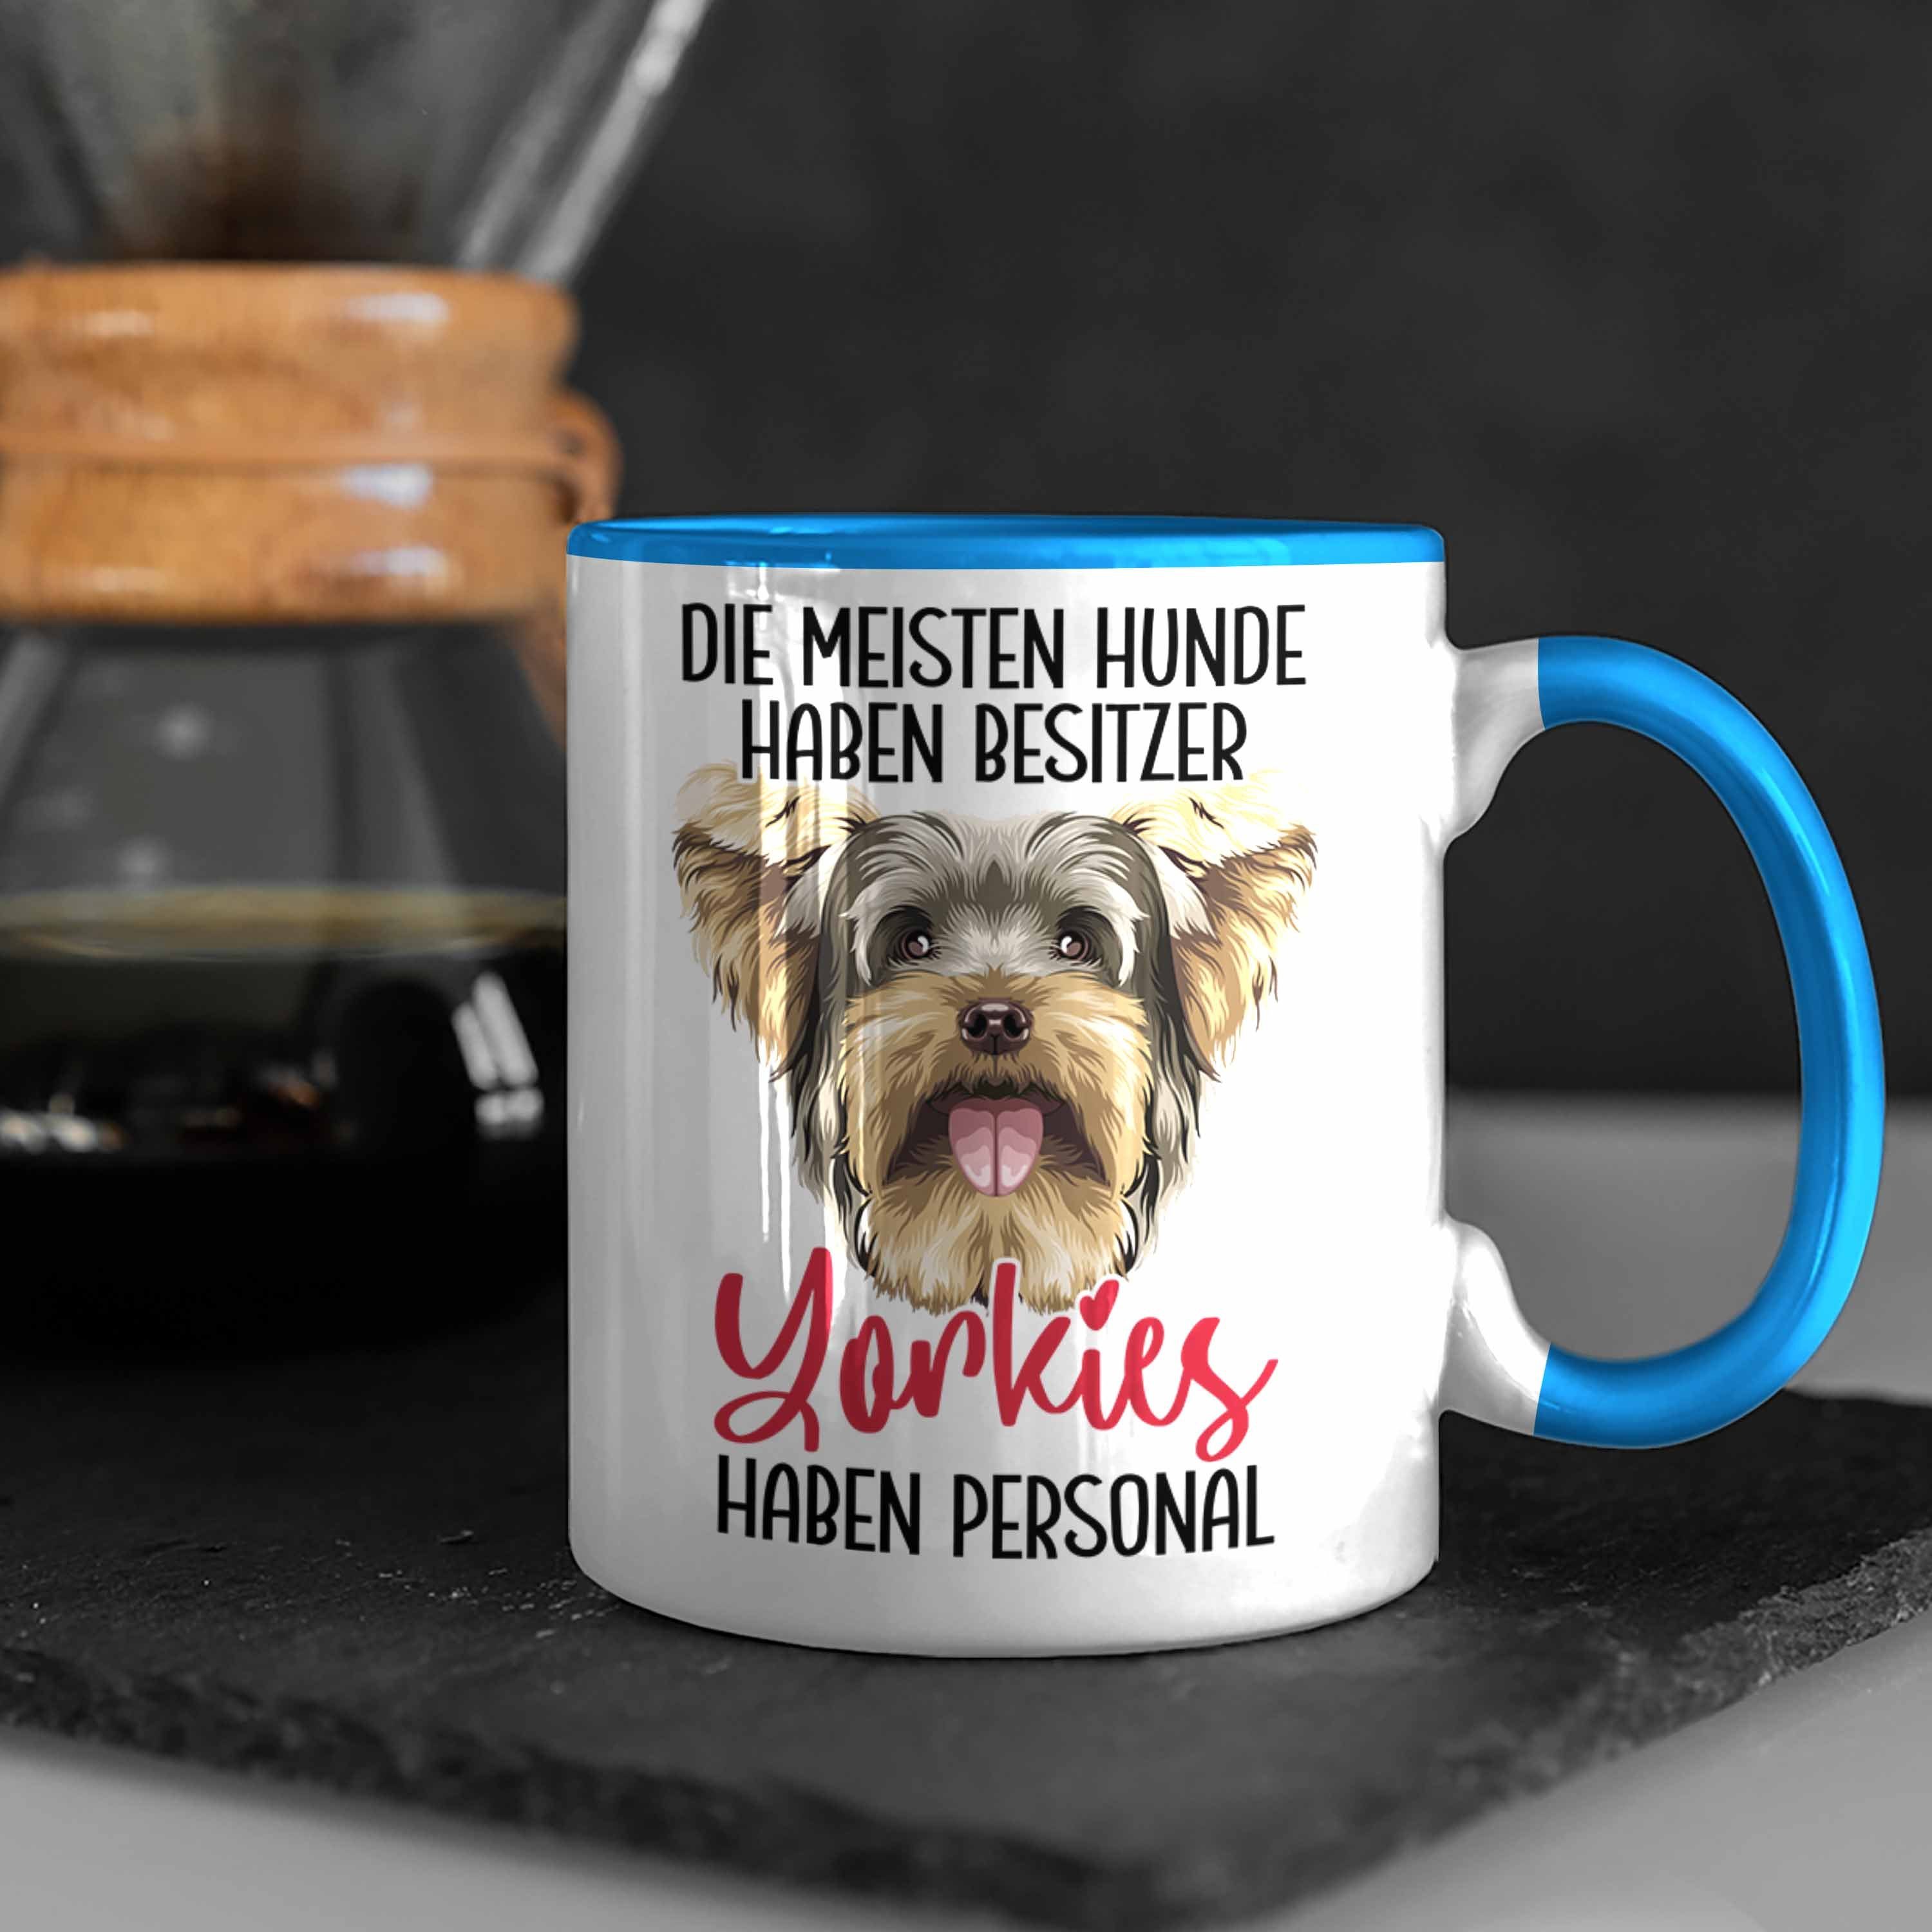 Kaffee-Becher Liebhaber Yorkie Ges Blau Tasse Yorkie-Besitzer Trendation Hund Geschenk Tasse